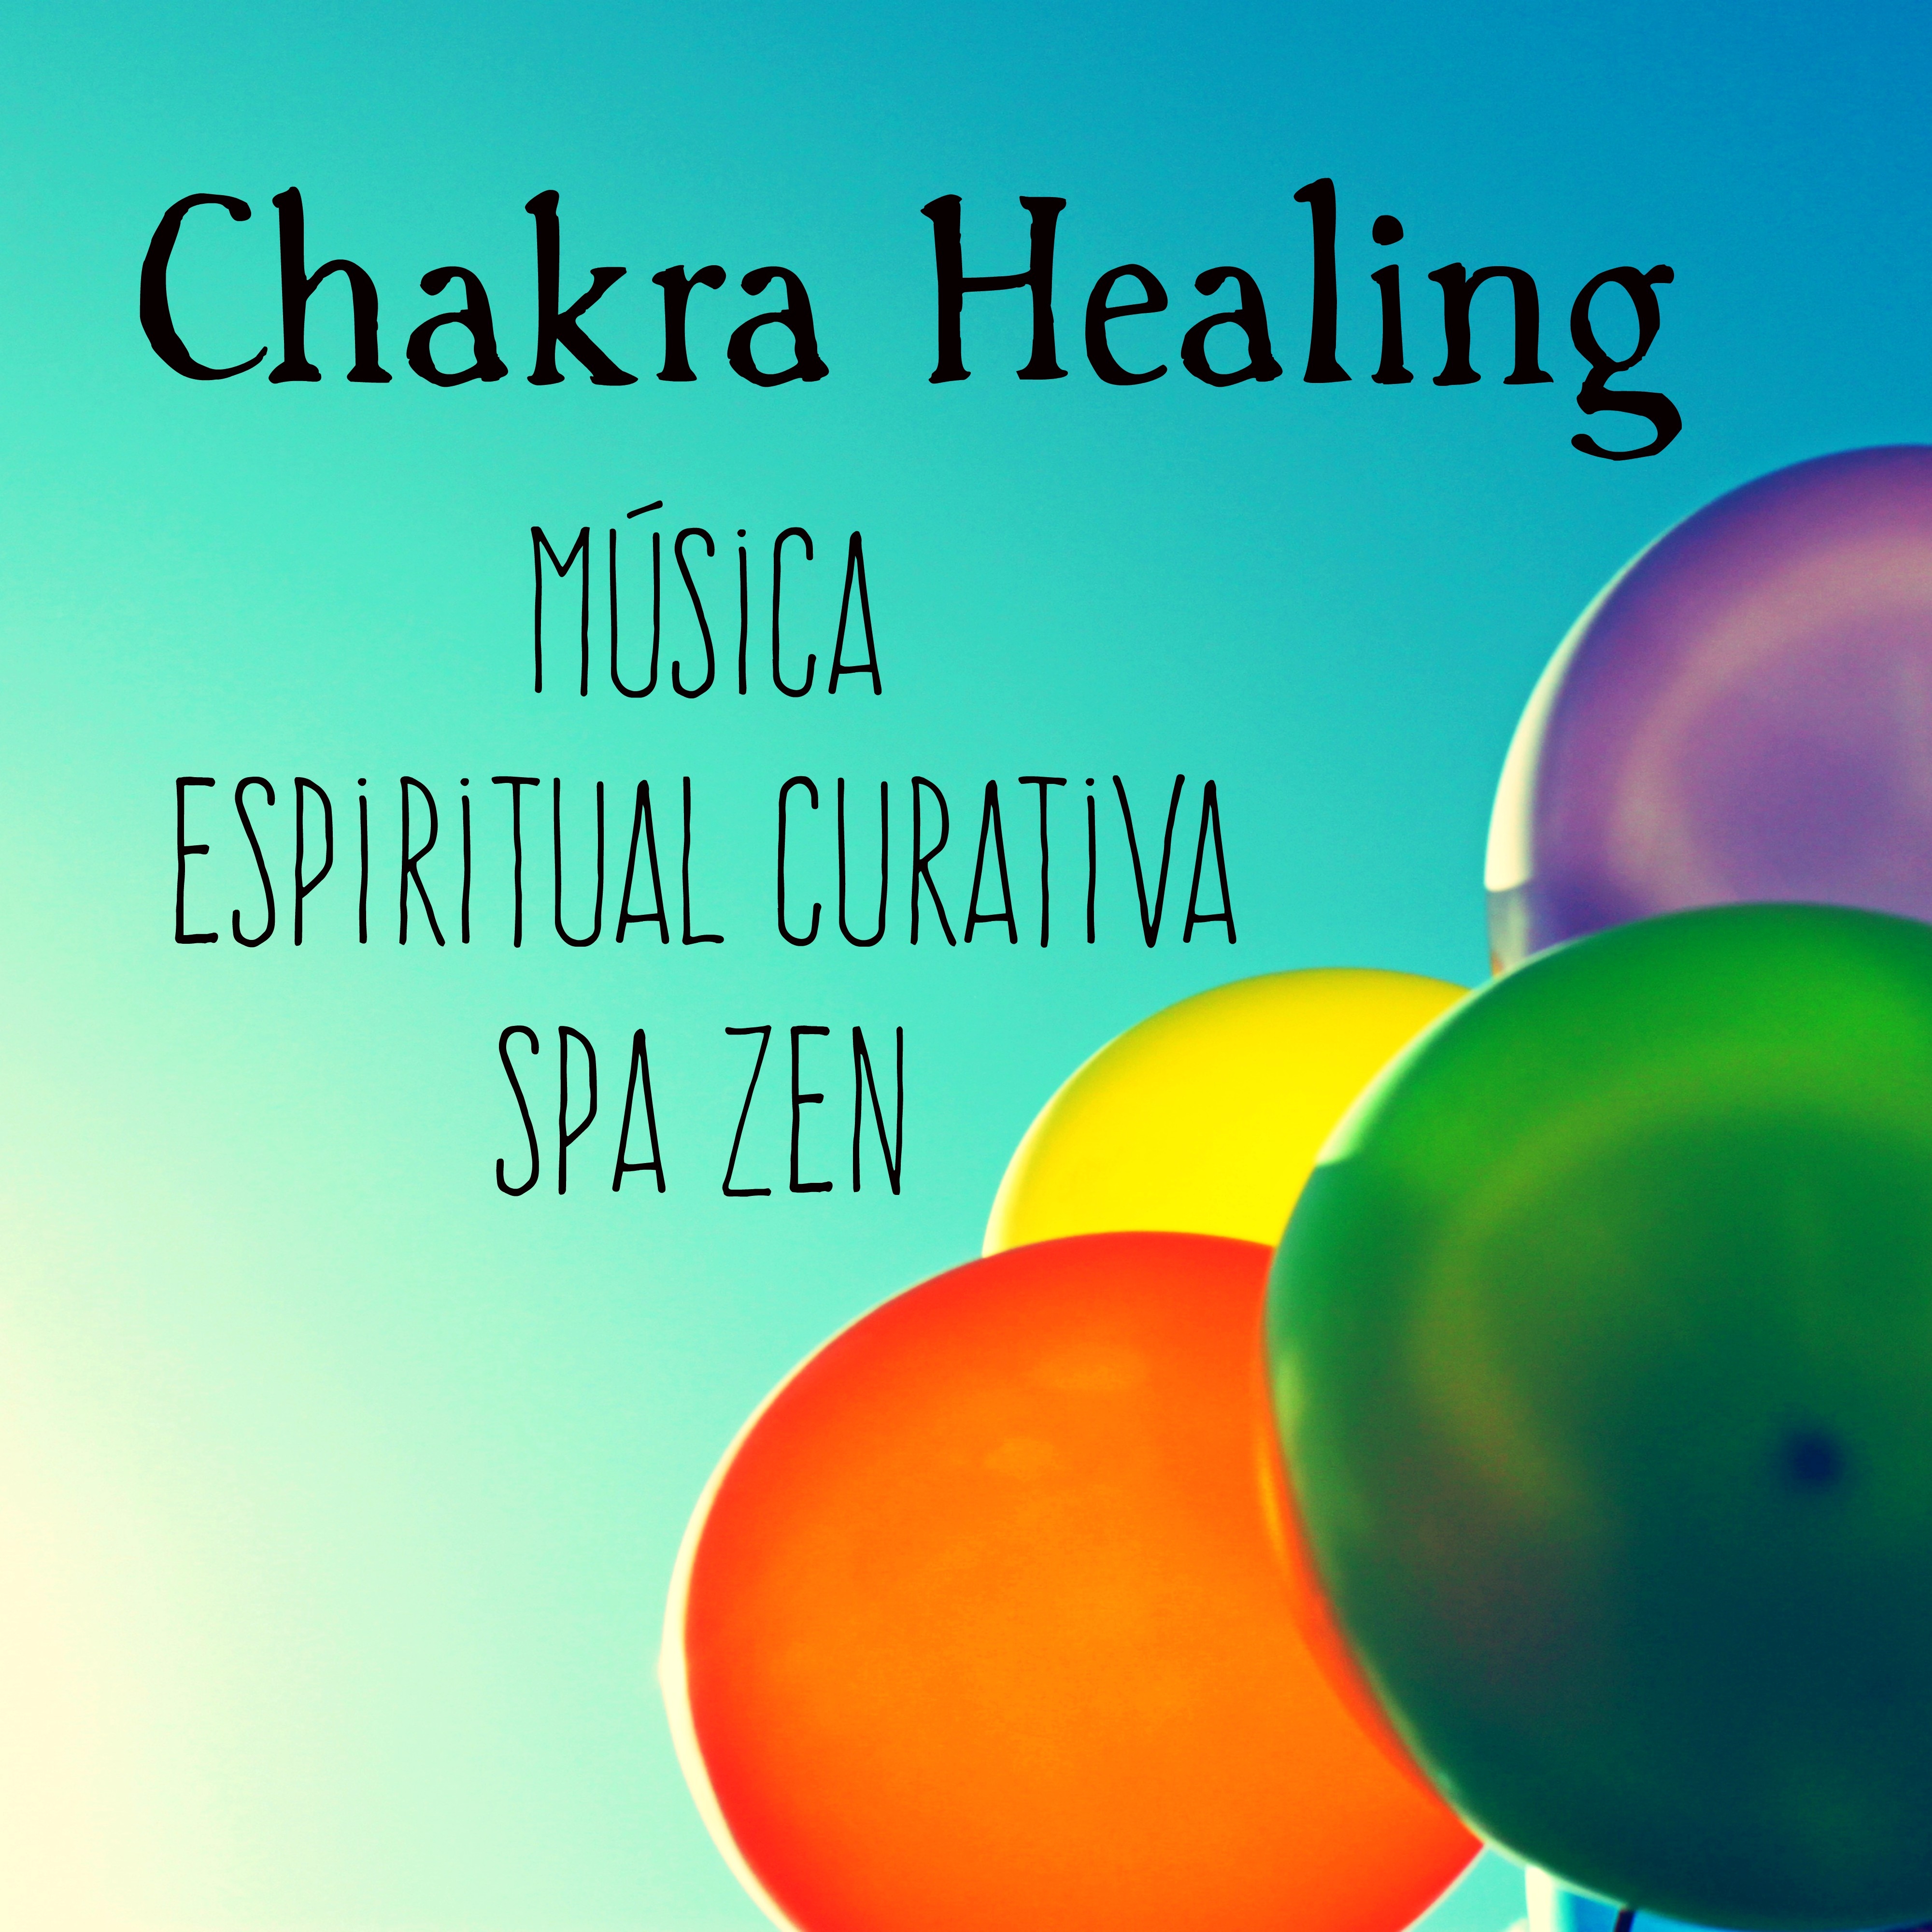 Chakra Healing  Mu sica Spa Zen Espiritual Curativa para Relajacion Profunda y Meditacio n de Atencio n Plena con Sonidos Naturales Instrumentales New Age